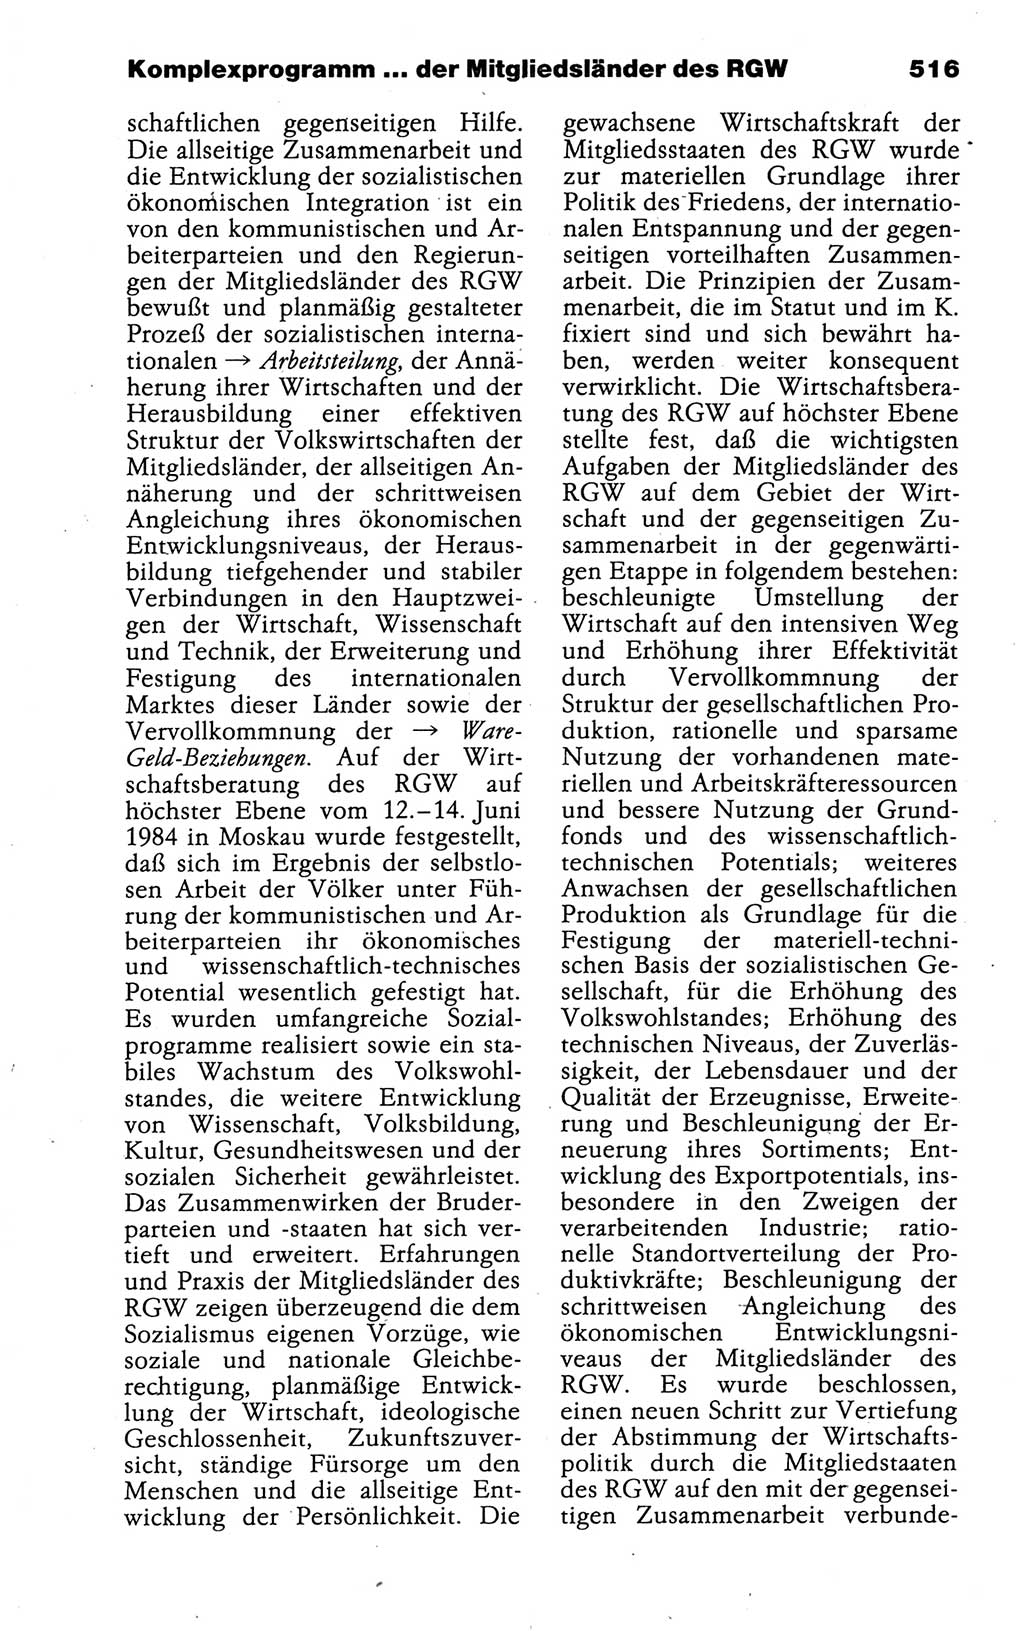 Kleines politisches Wörterbuch [Deutsche Demokratische Republik (DDR)] 1988, Seite 516 (Kl. pol. Wb. DDR 1988, S. 516)